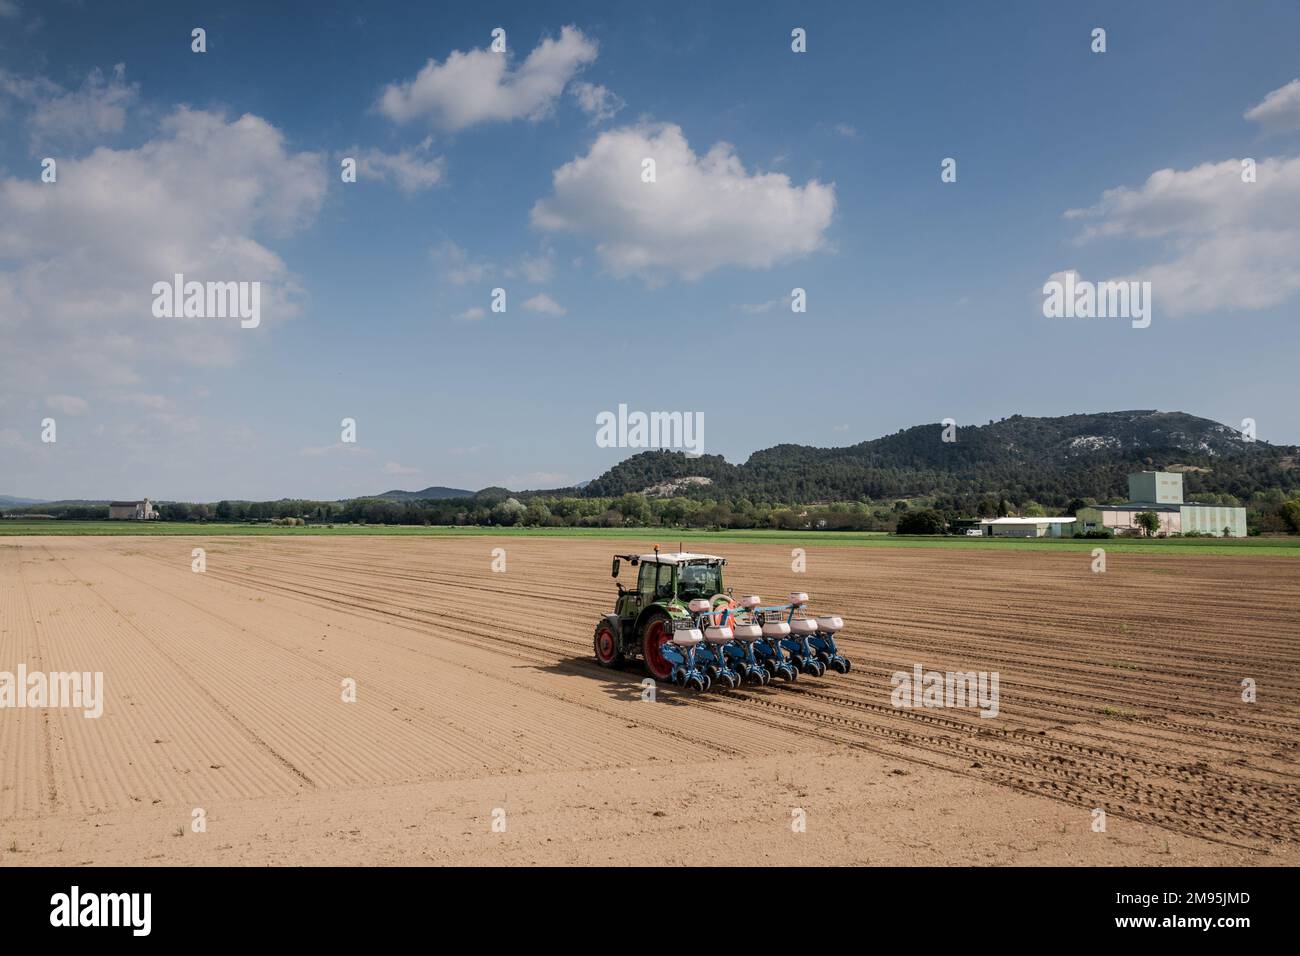 Pertuis (Südostfrankreich): Setzlinge auf einem Feld der landwirtschaftlichen Ebene von Pertuis, Traktor mit Sämaschine auf einem gepflügten Land Stockfoto